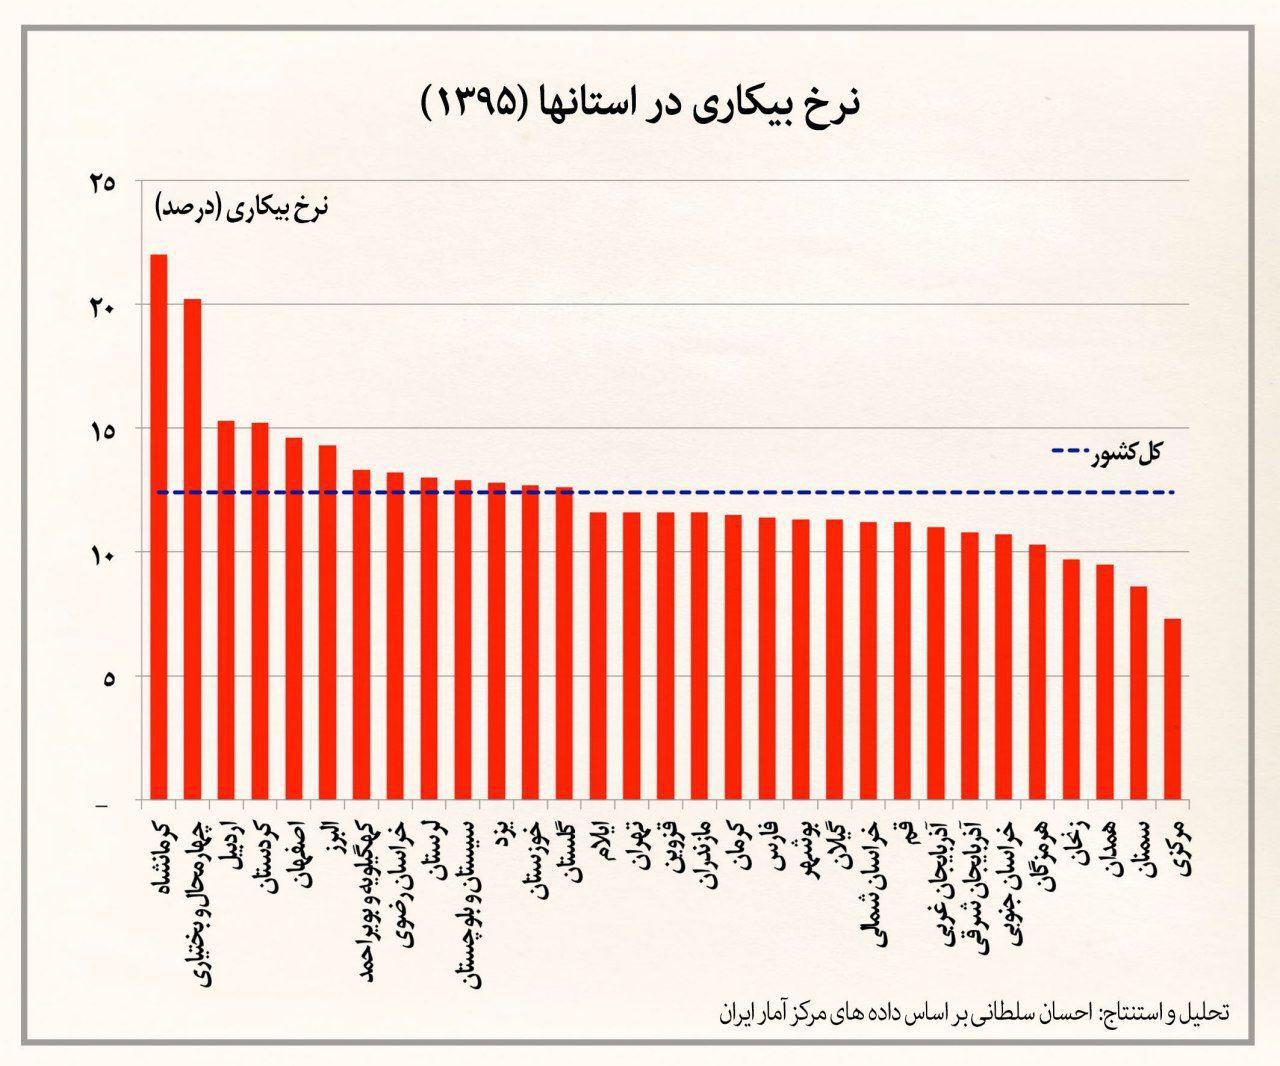 هر استان چقدر بیکار دارد؟ +نمودار